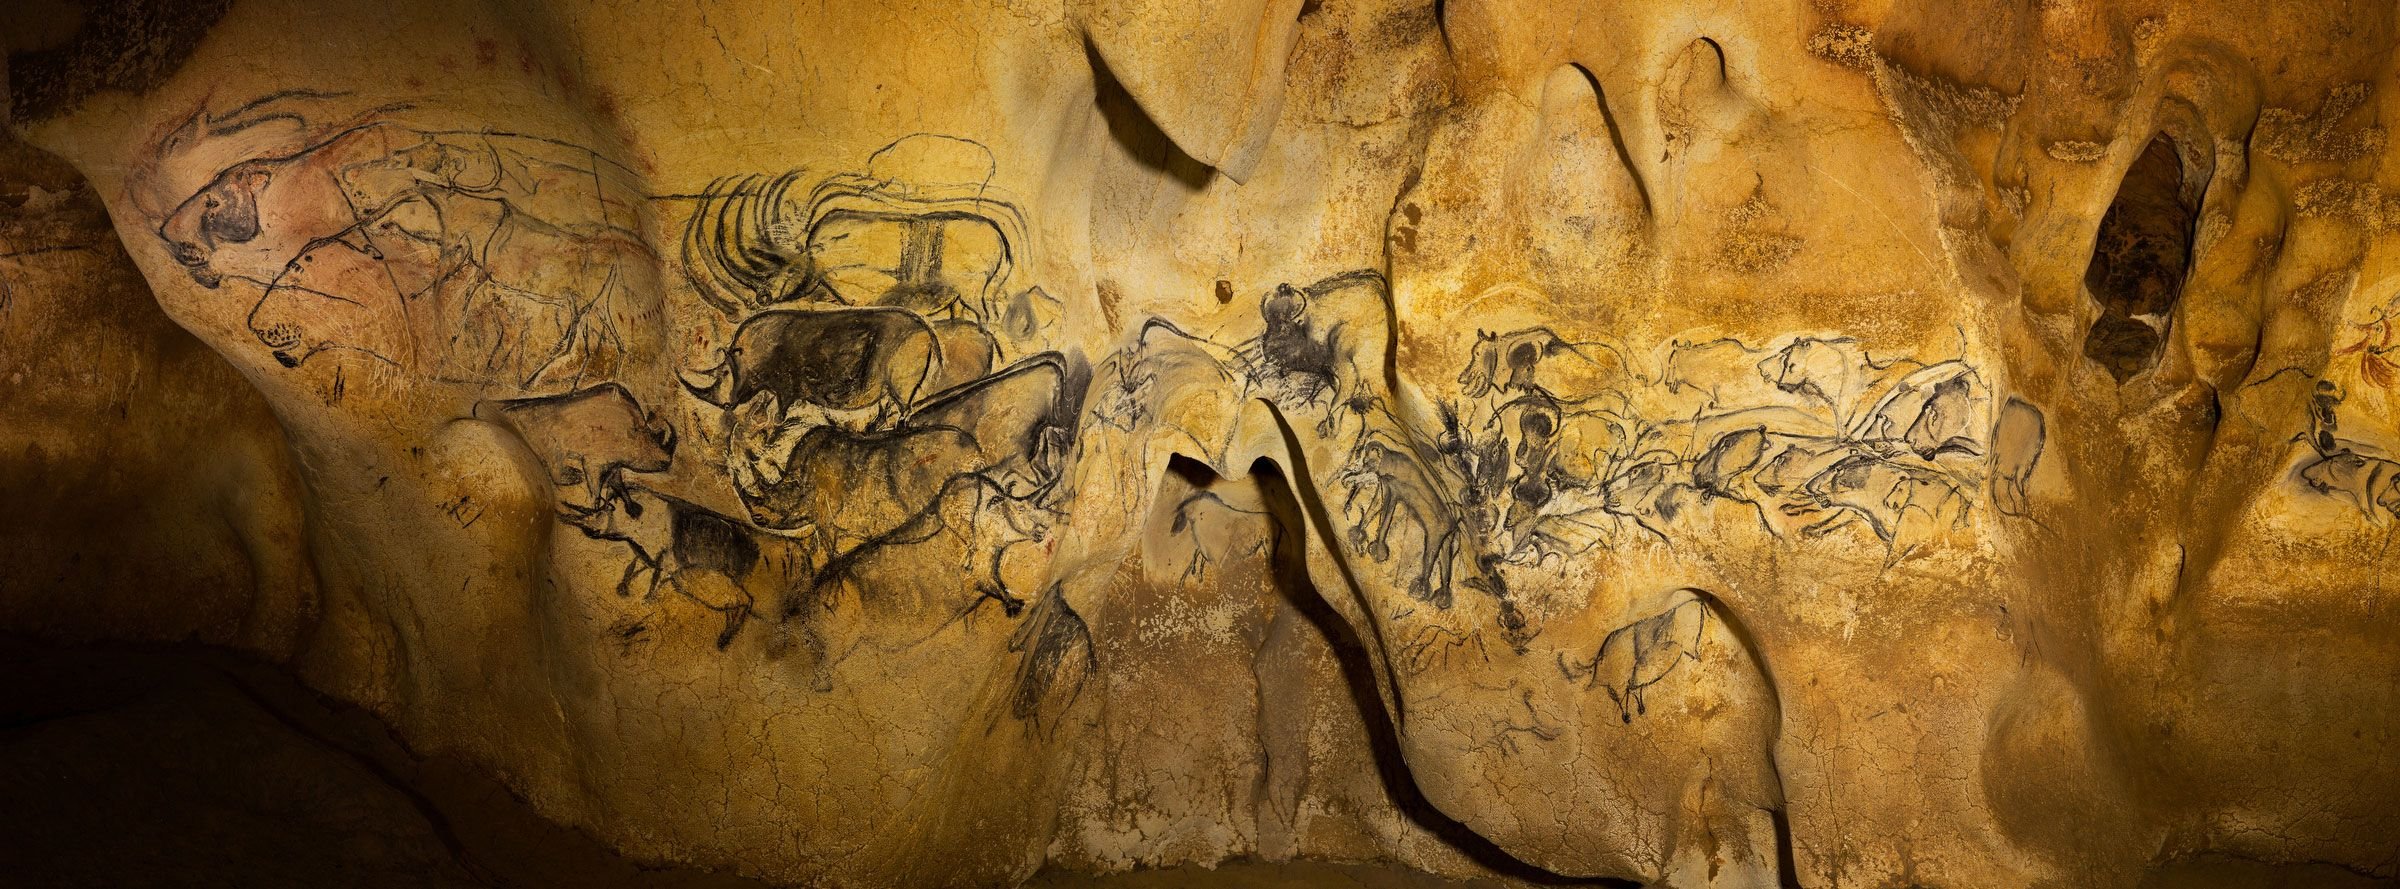 Пещера Ласко кошачий зал